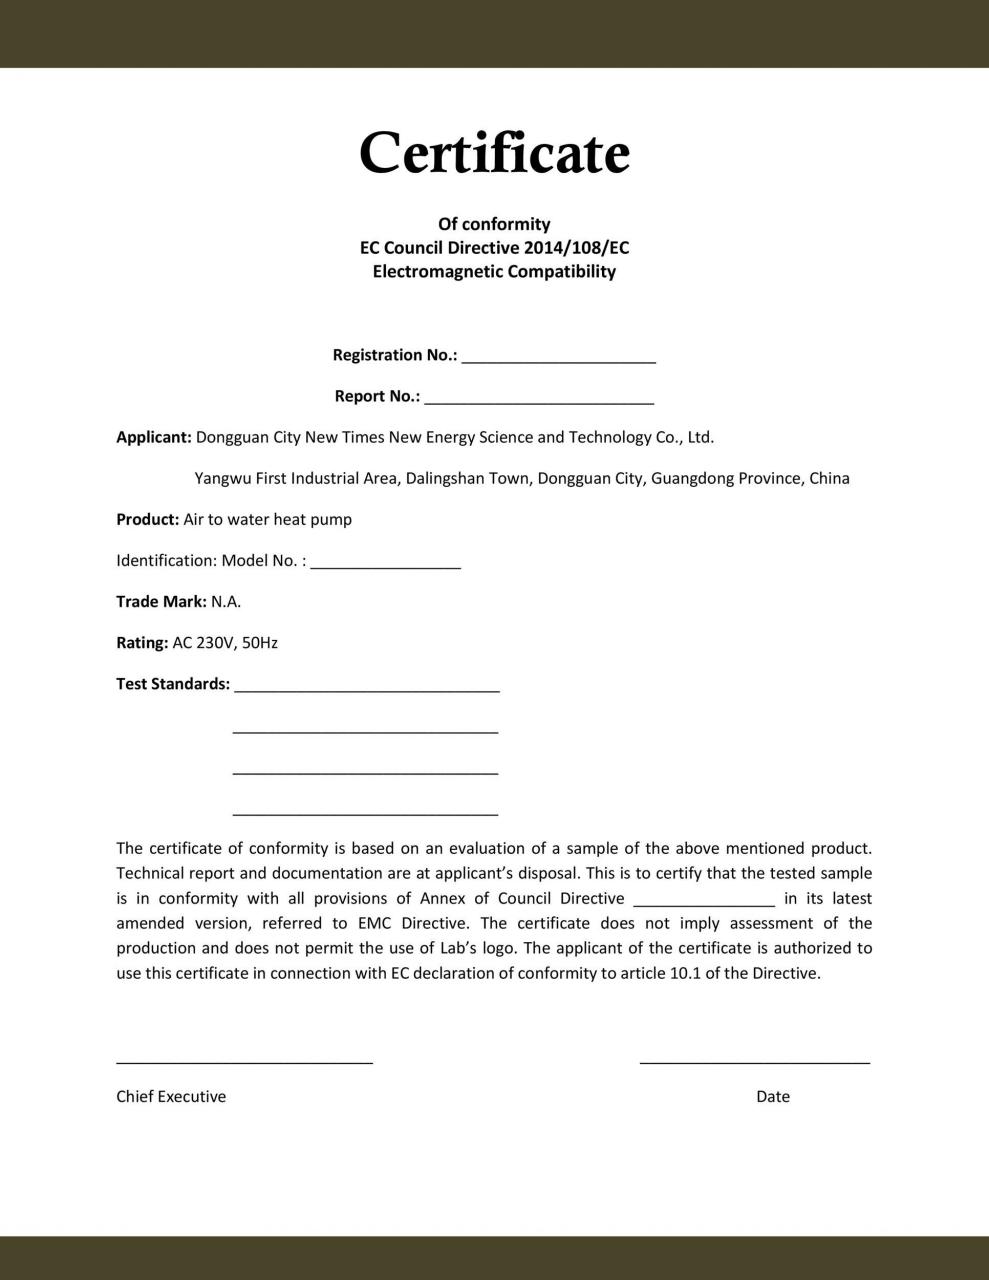 Certificat de conformité gratuit 06